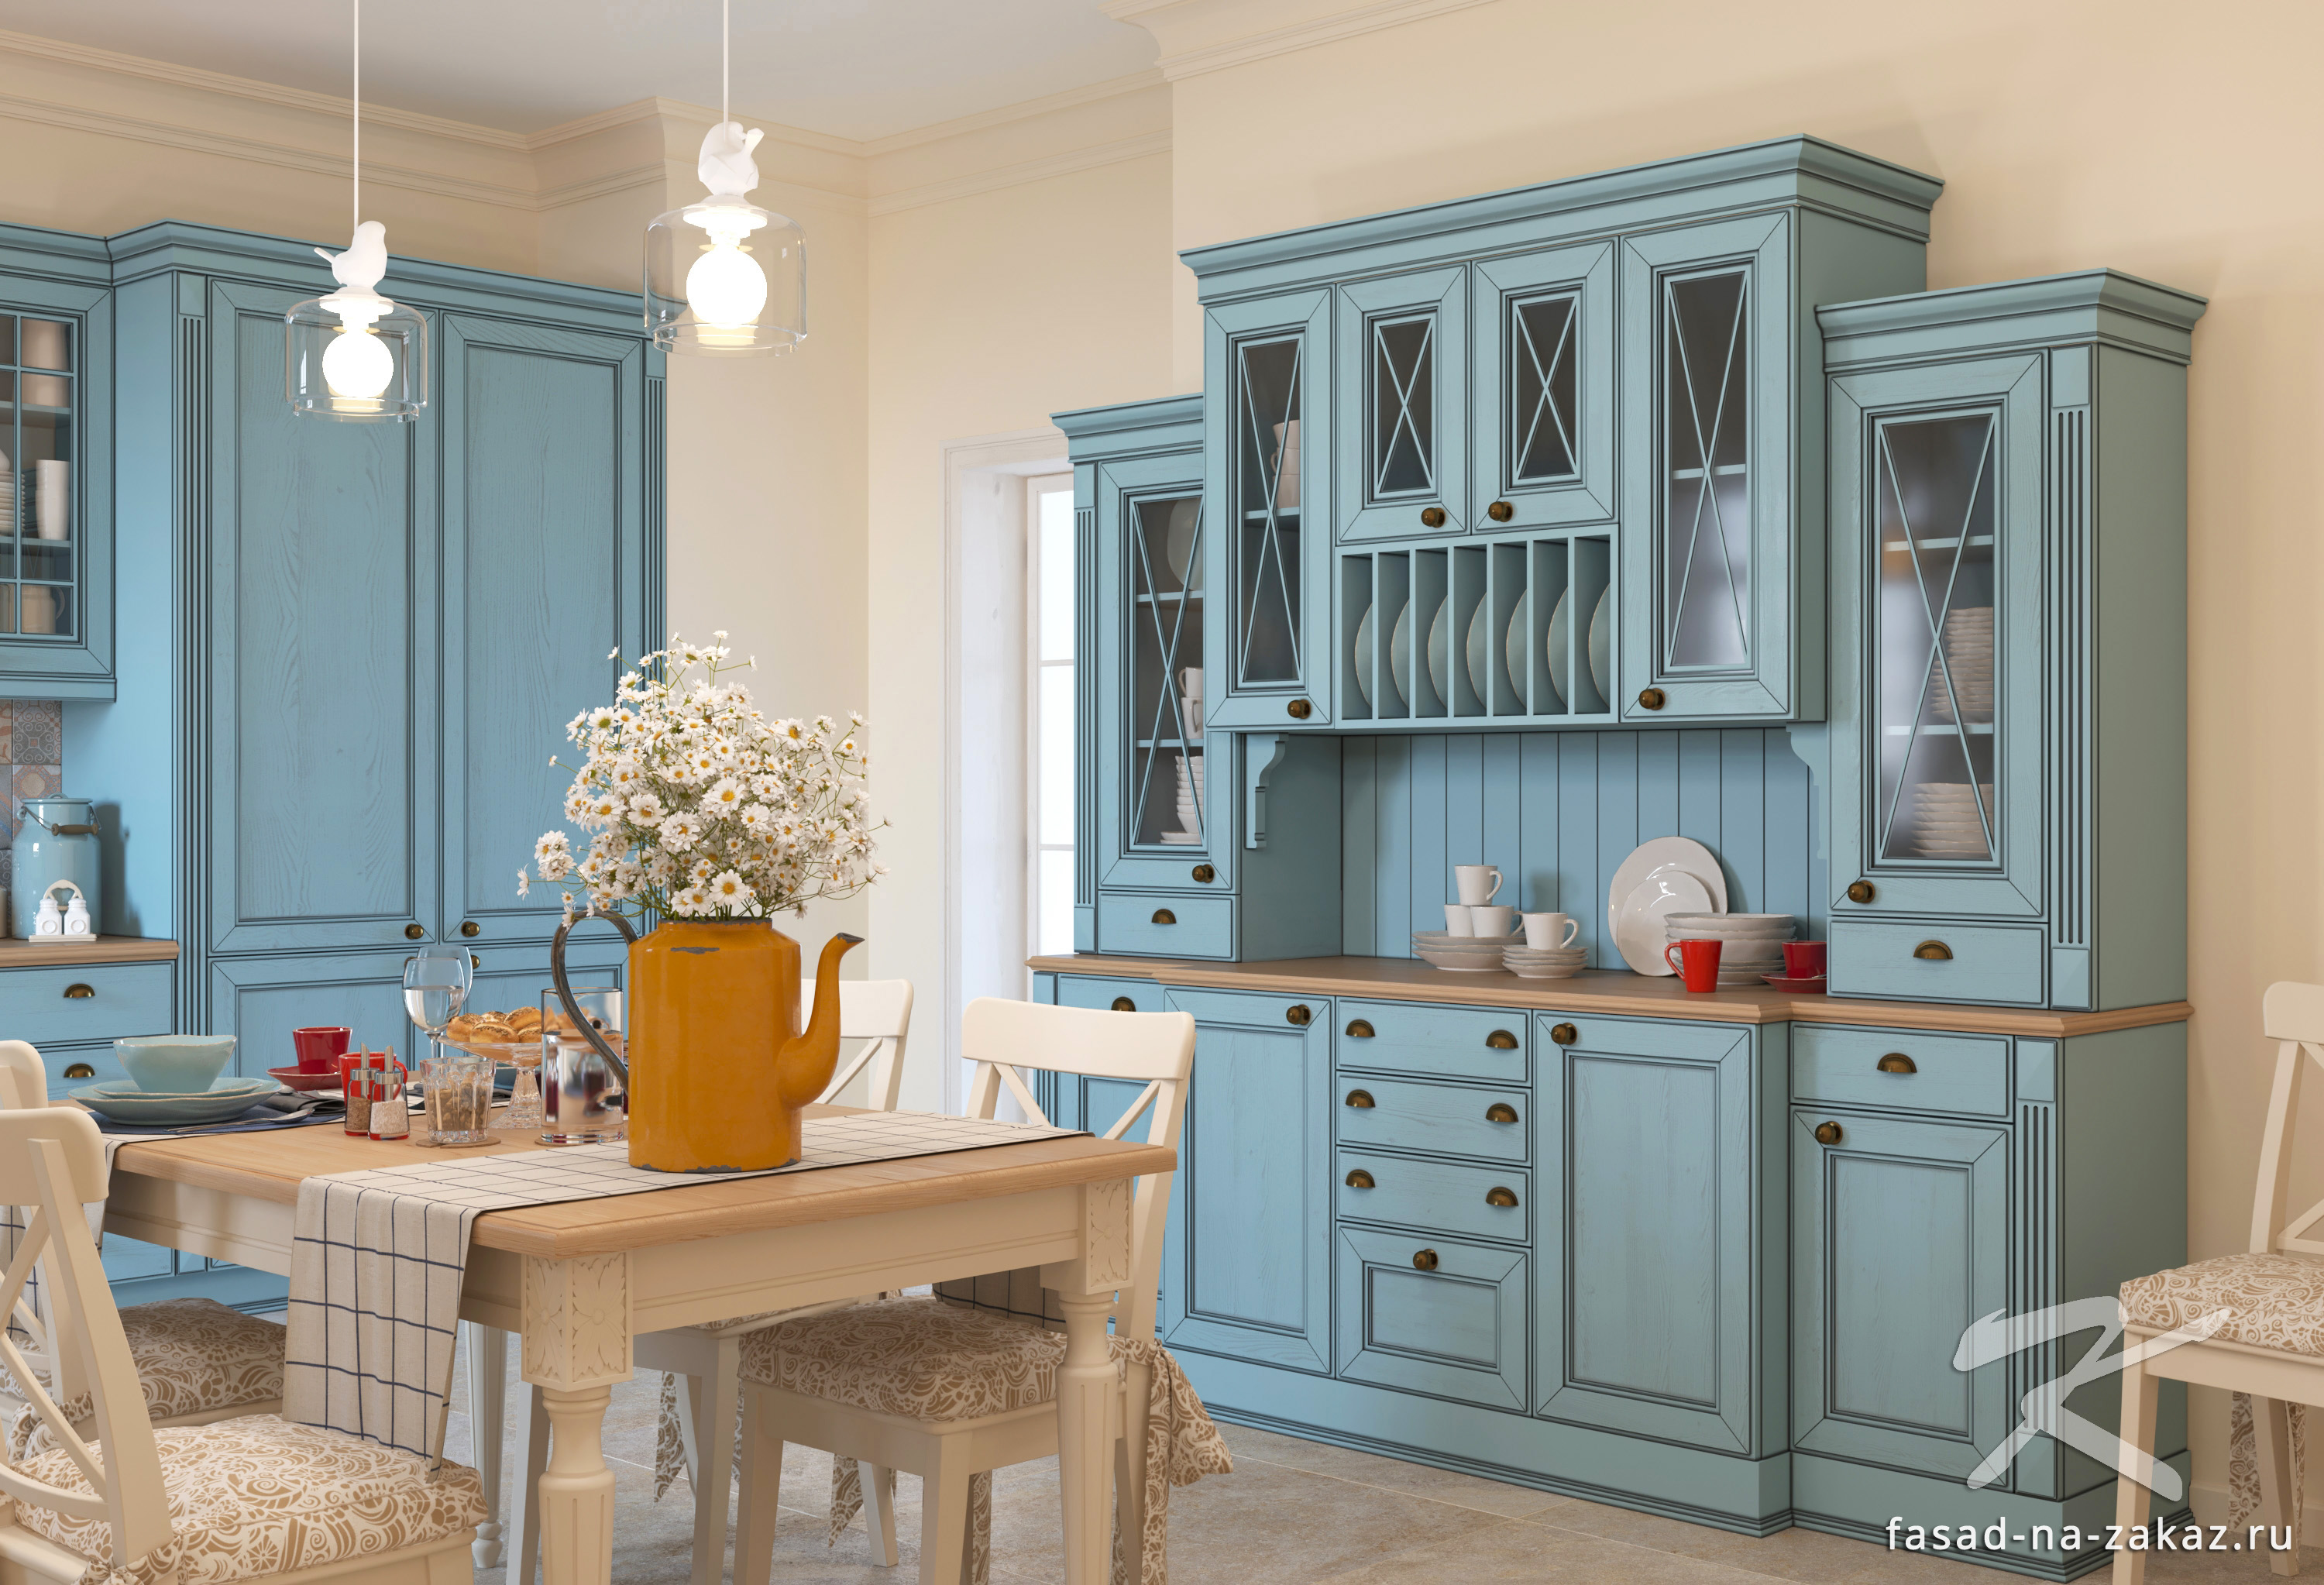 Мебельные фасады для кухни  отдельно в СПб - цена доступная .